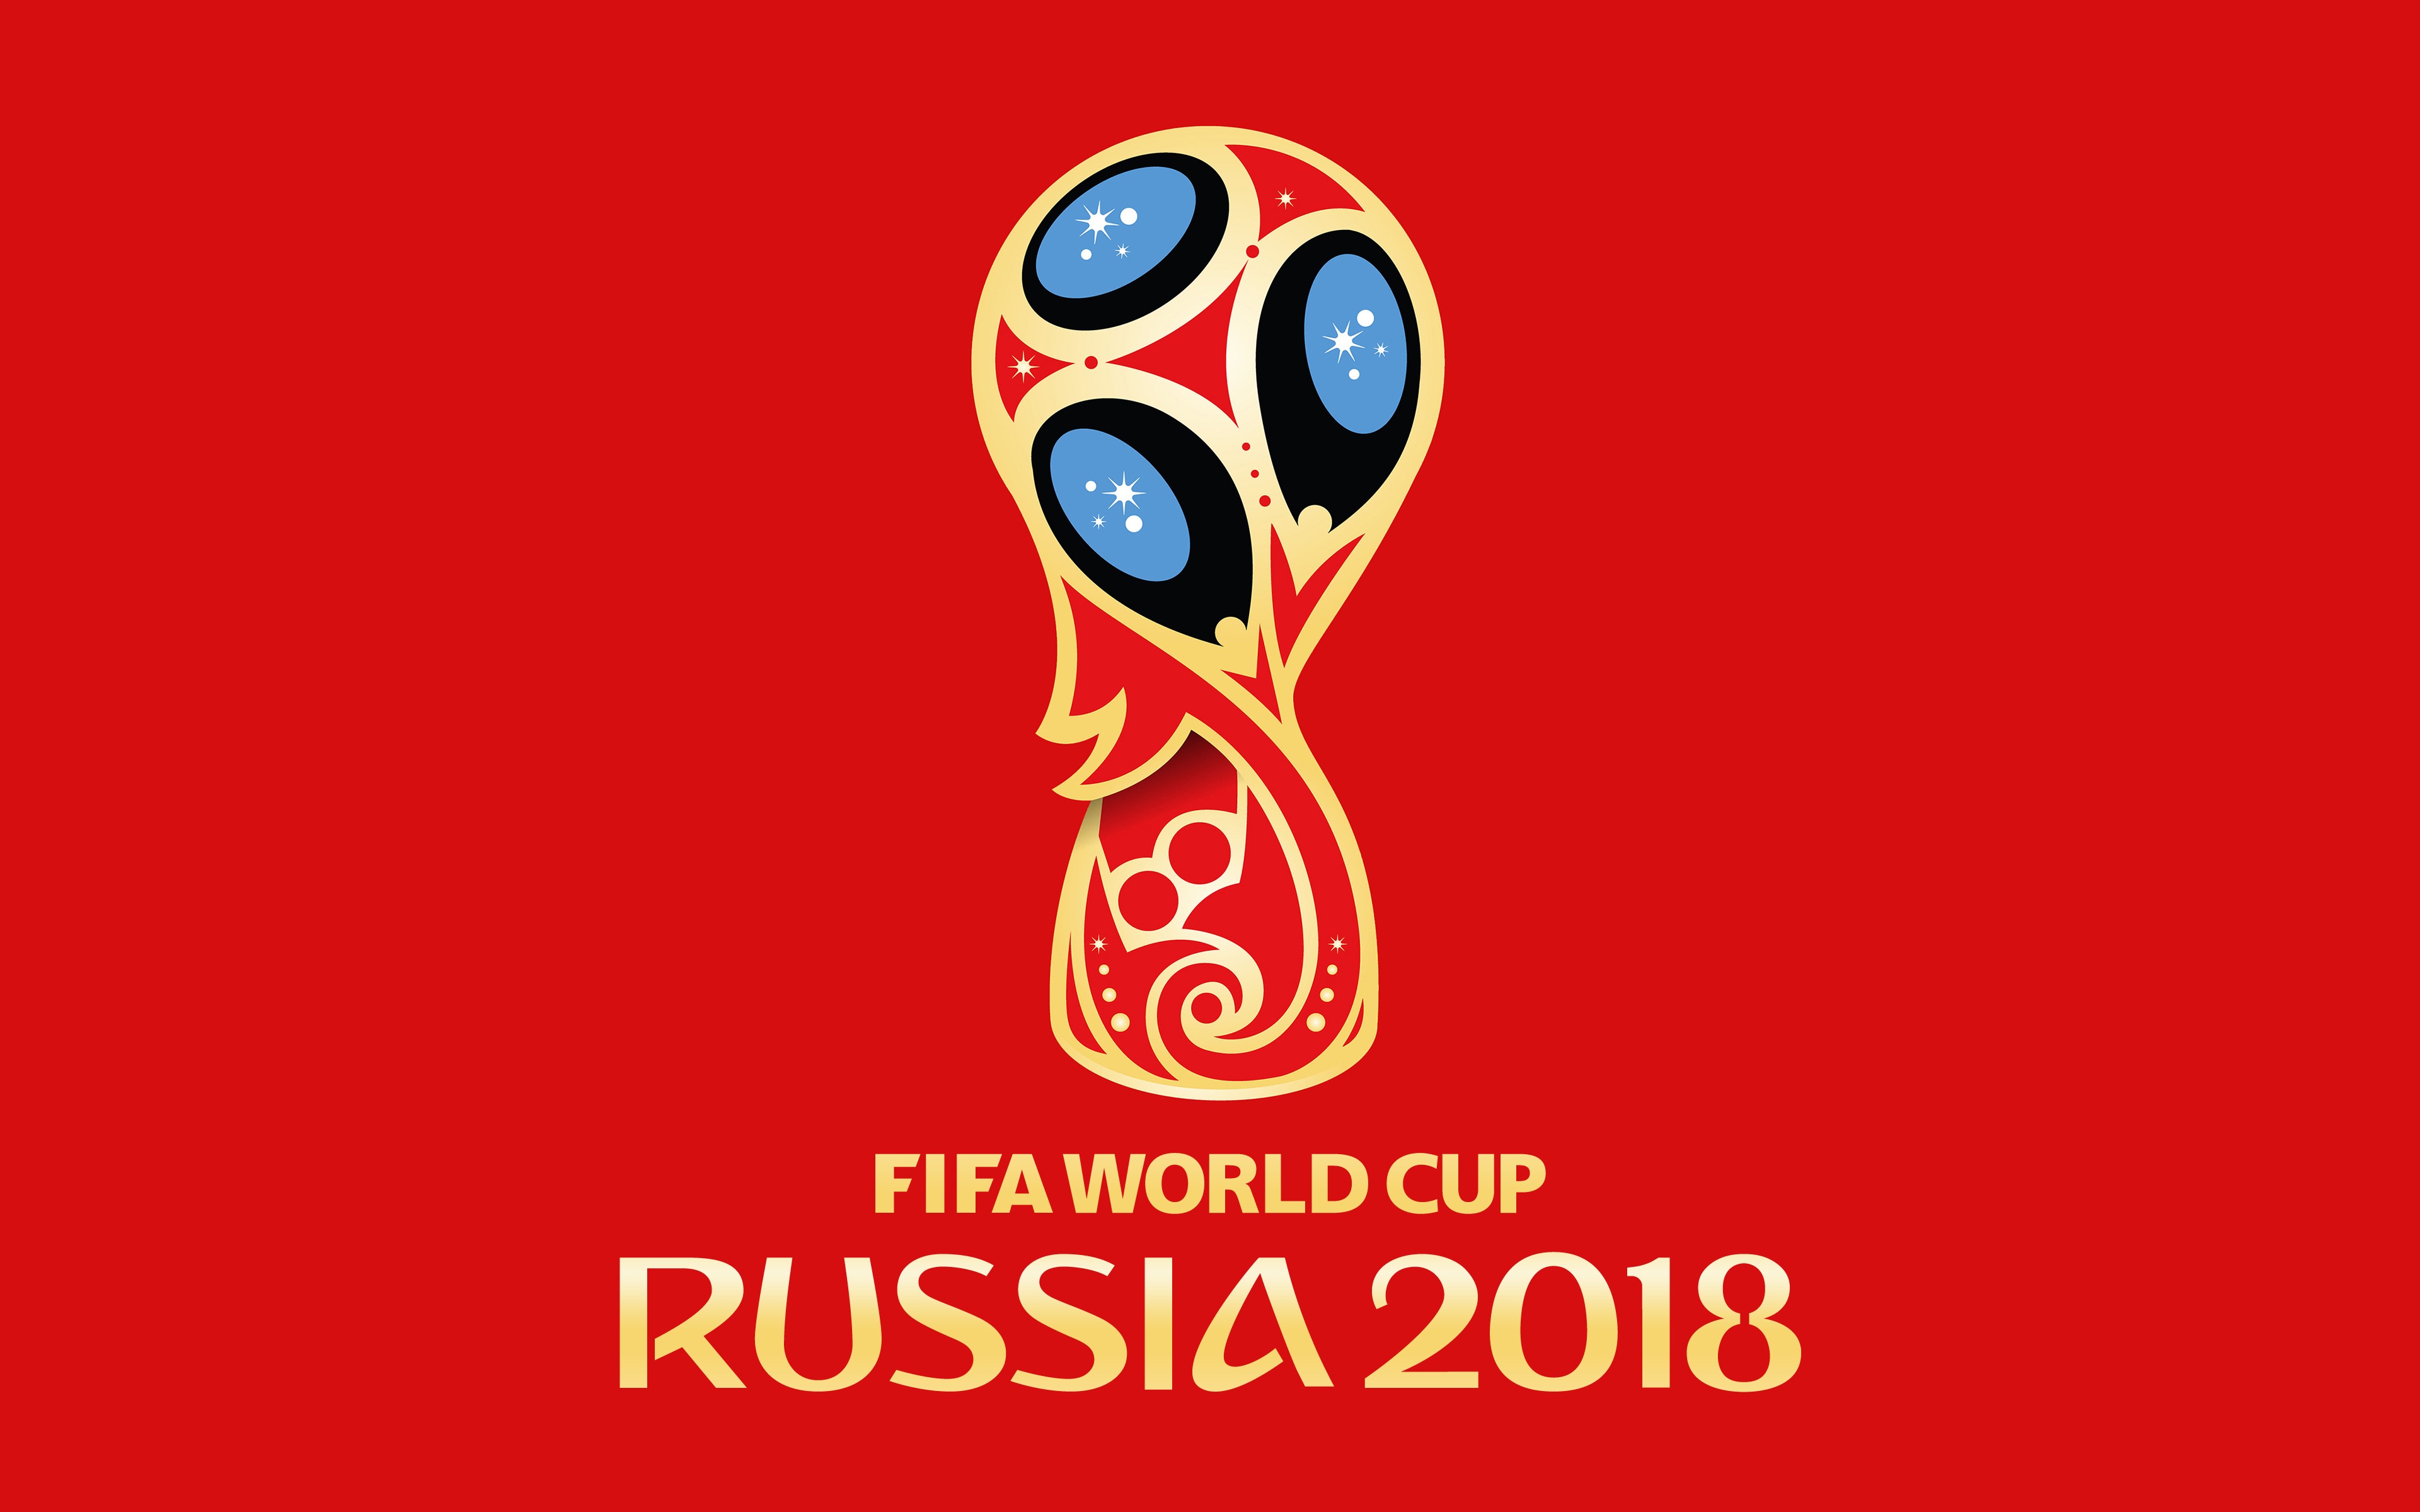 sports, 2018 fifa world cup, fifa, logo, soccer, world cup 2018